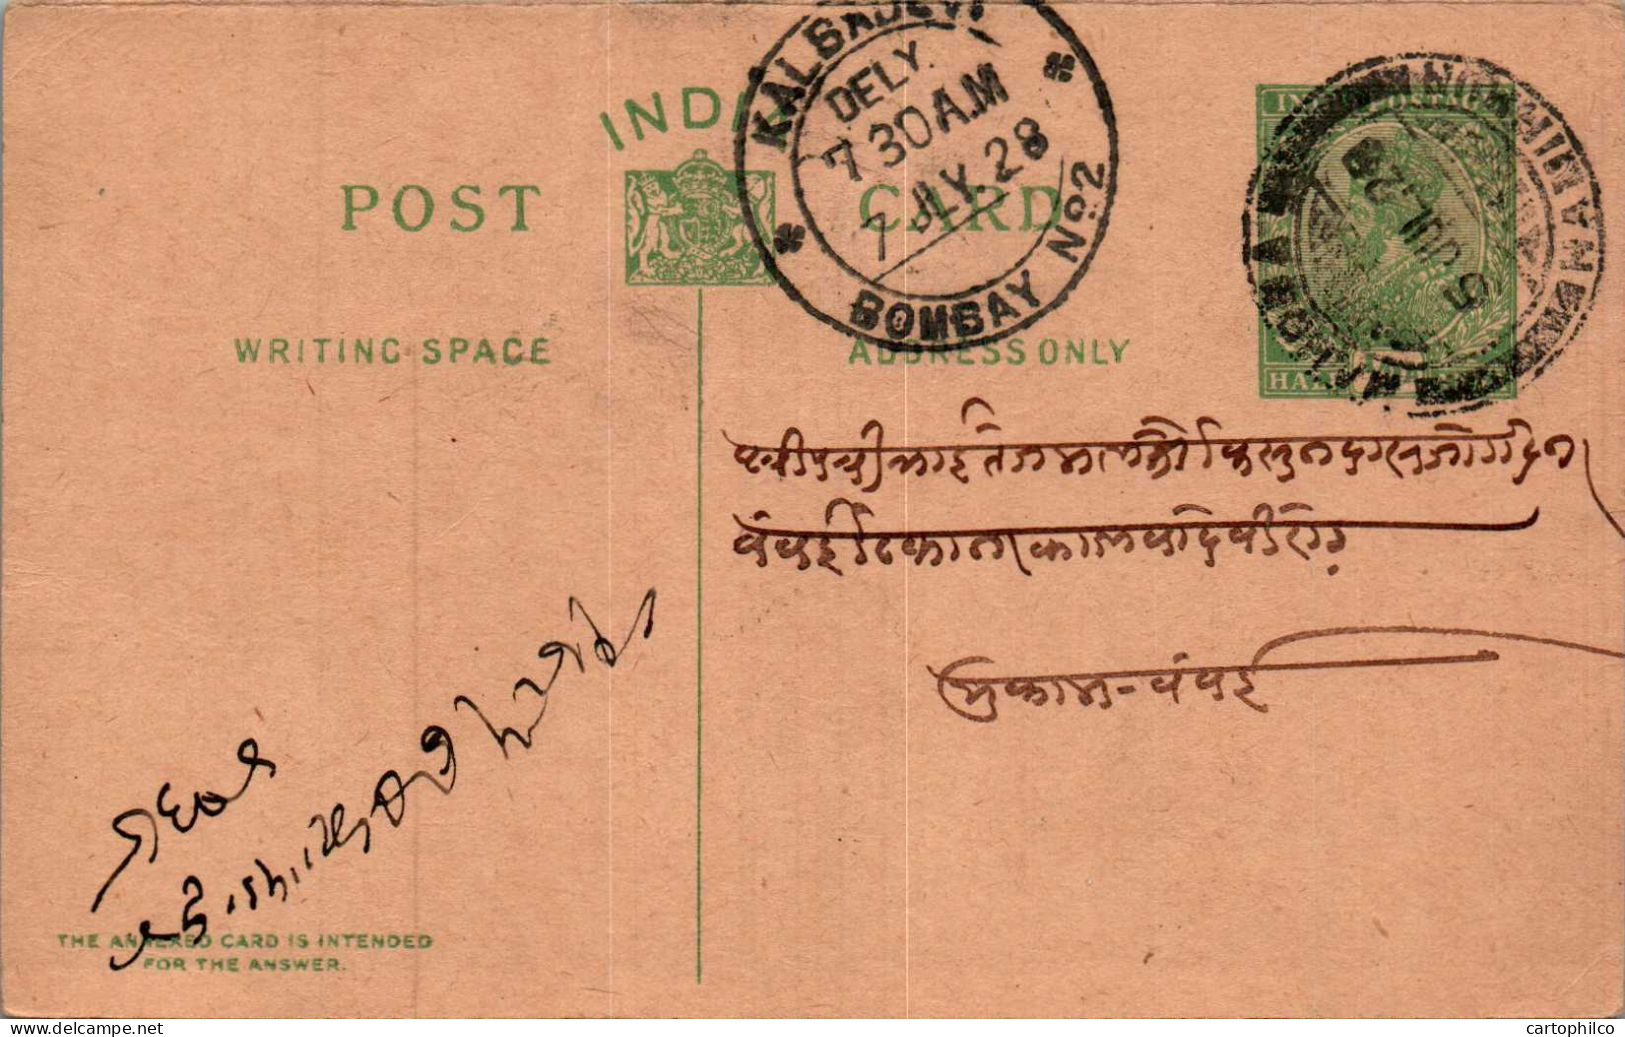 India Postal Stationery 1/2A George V Kalbadevi Bombay Cds - Ansichtskarten